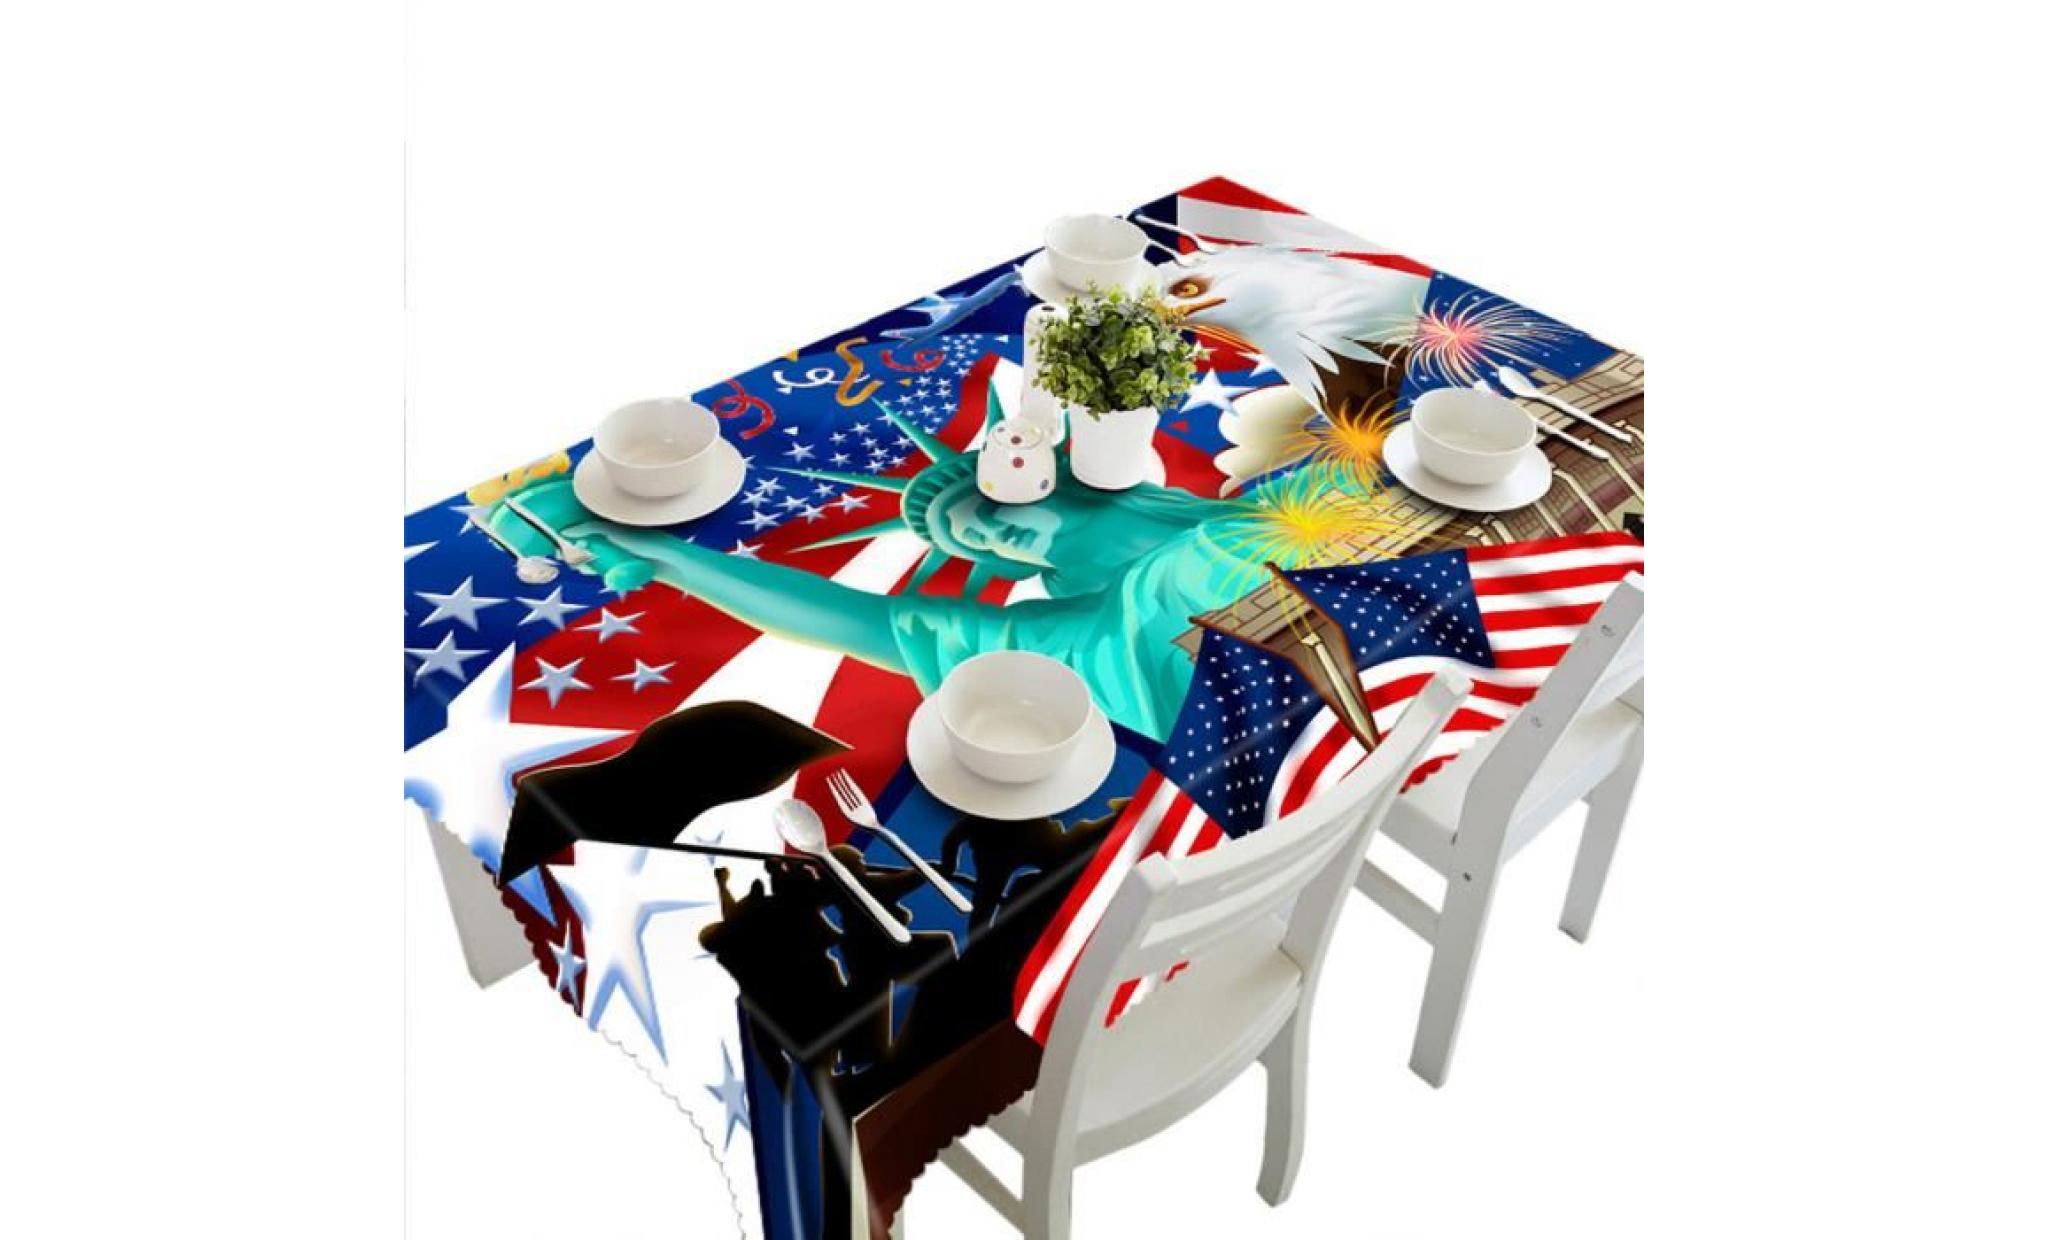 3d multi table à manger fonctionnelle tissu pour picnic party i nappe  nahipa e464